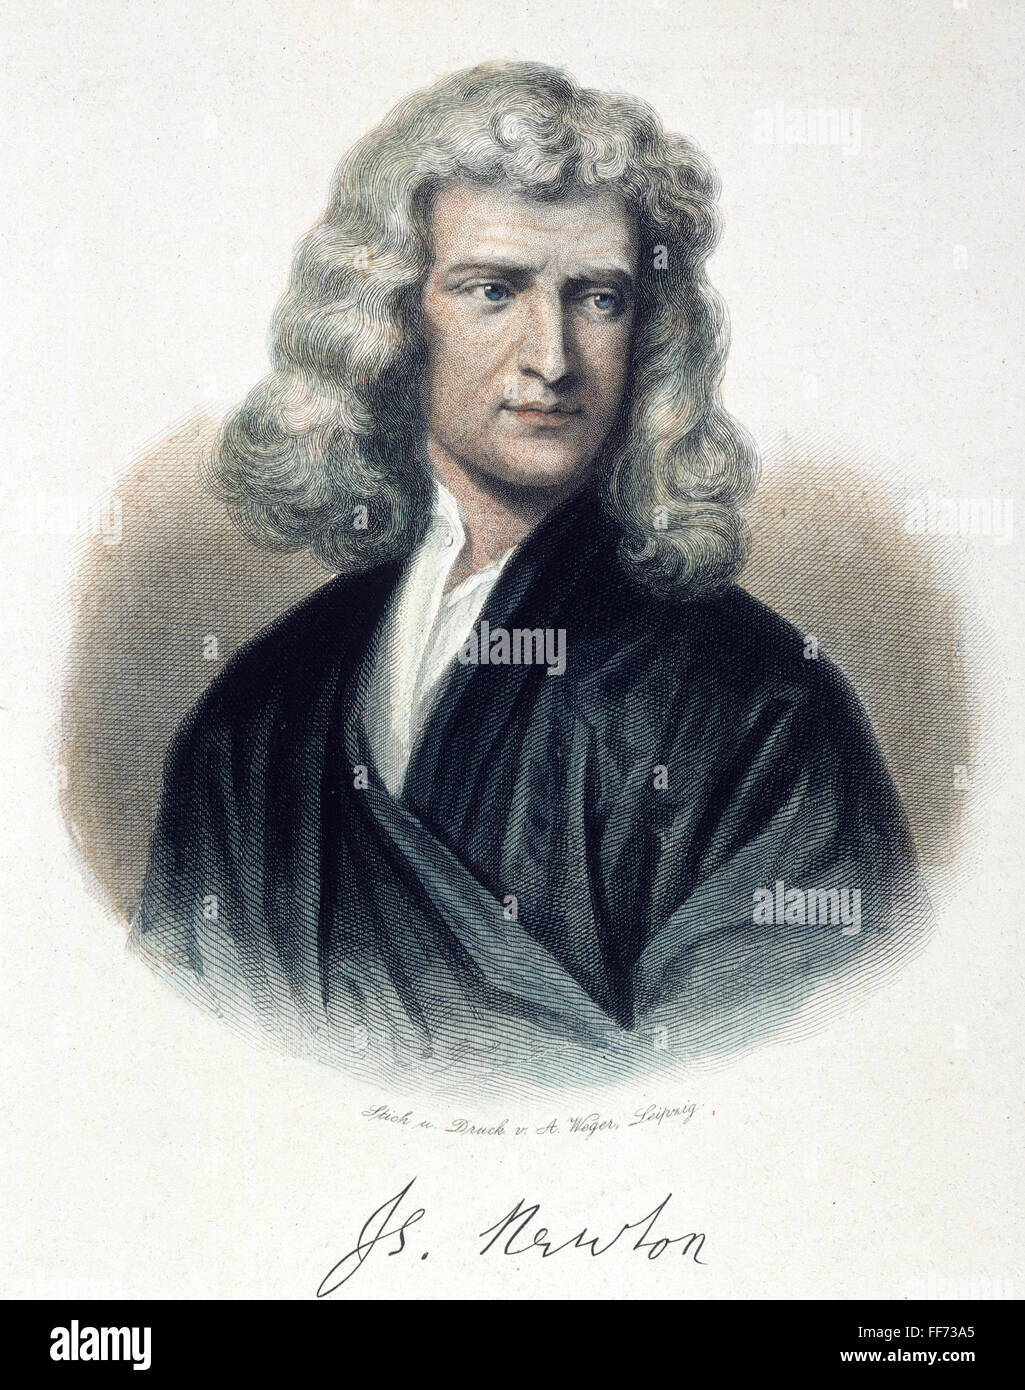 SIR Isaac Newton (1642-1727). NEnglish /physicien et mathématicien. Gravure sur acier de couleur, l'allemand, 19e siècle. Banque D'Images